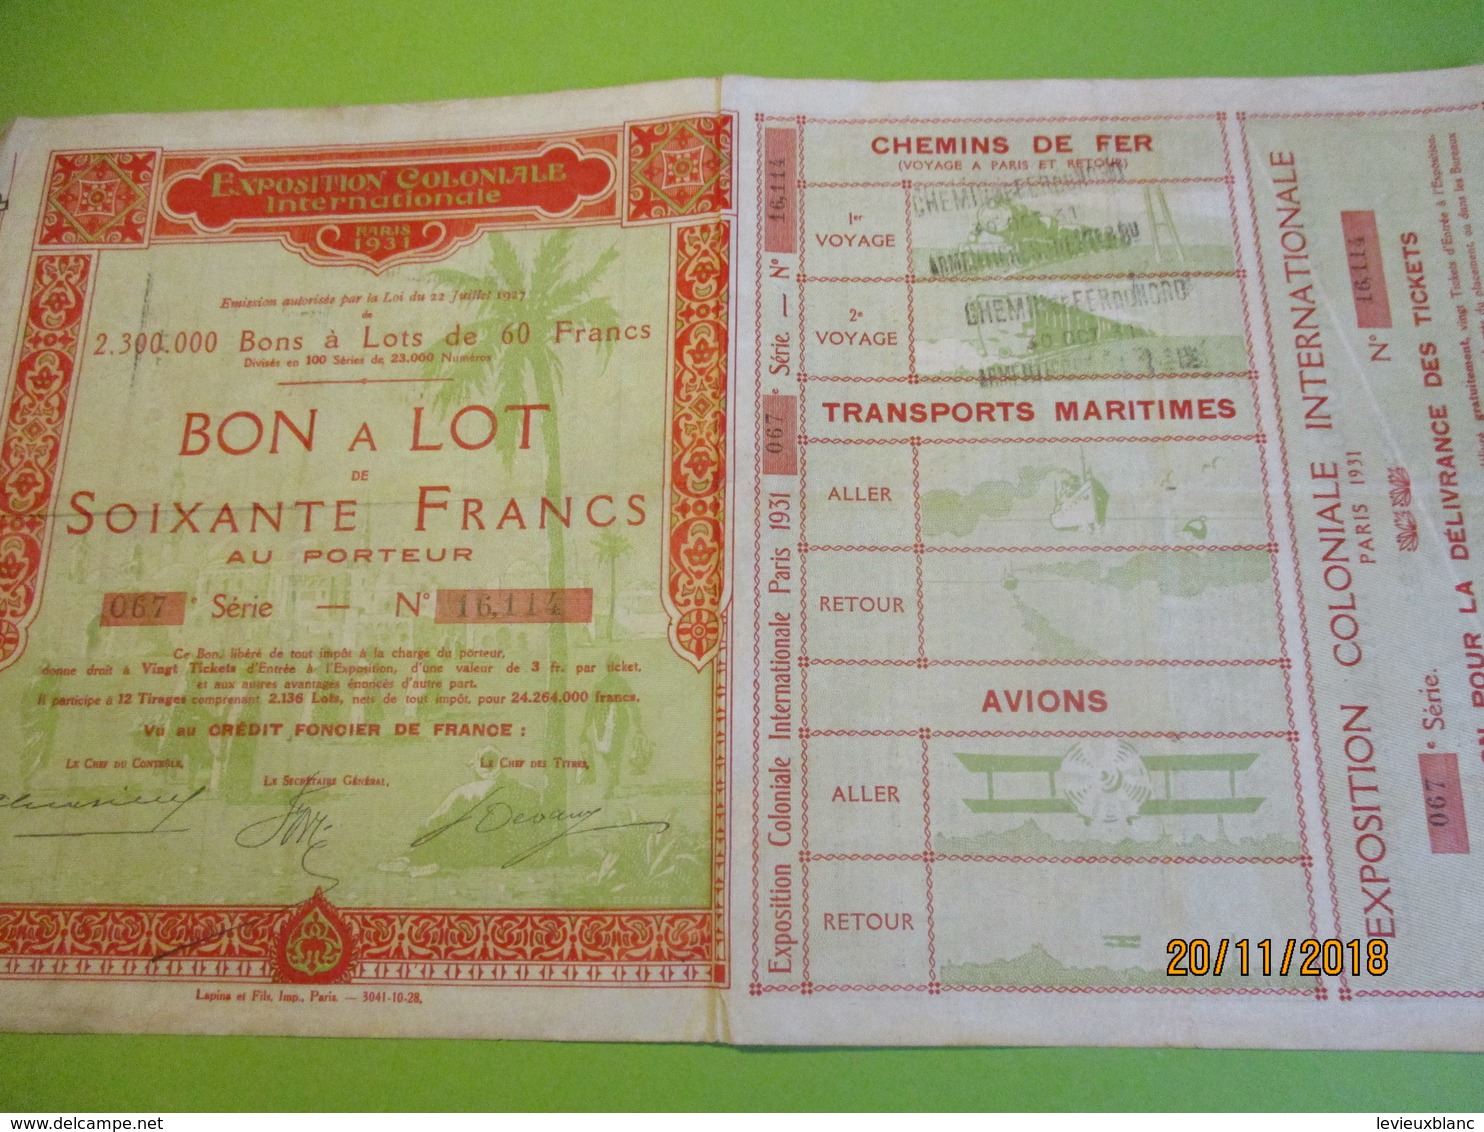 Bon à Lot 60 Fr Porteur/Exposition Coloniale Internationale/Imp Lapins & Fils/PARIS/1931                 ACT153 - Tourisme